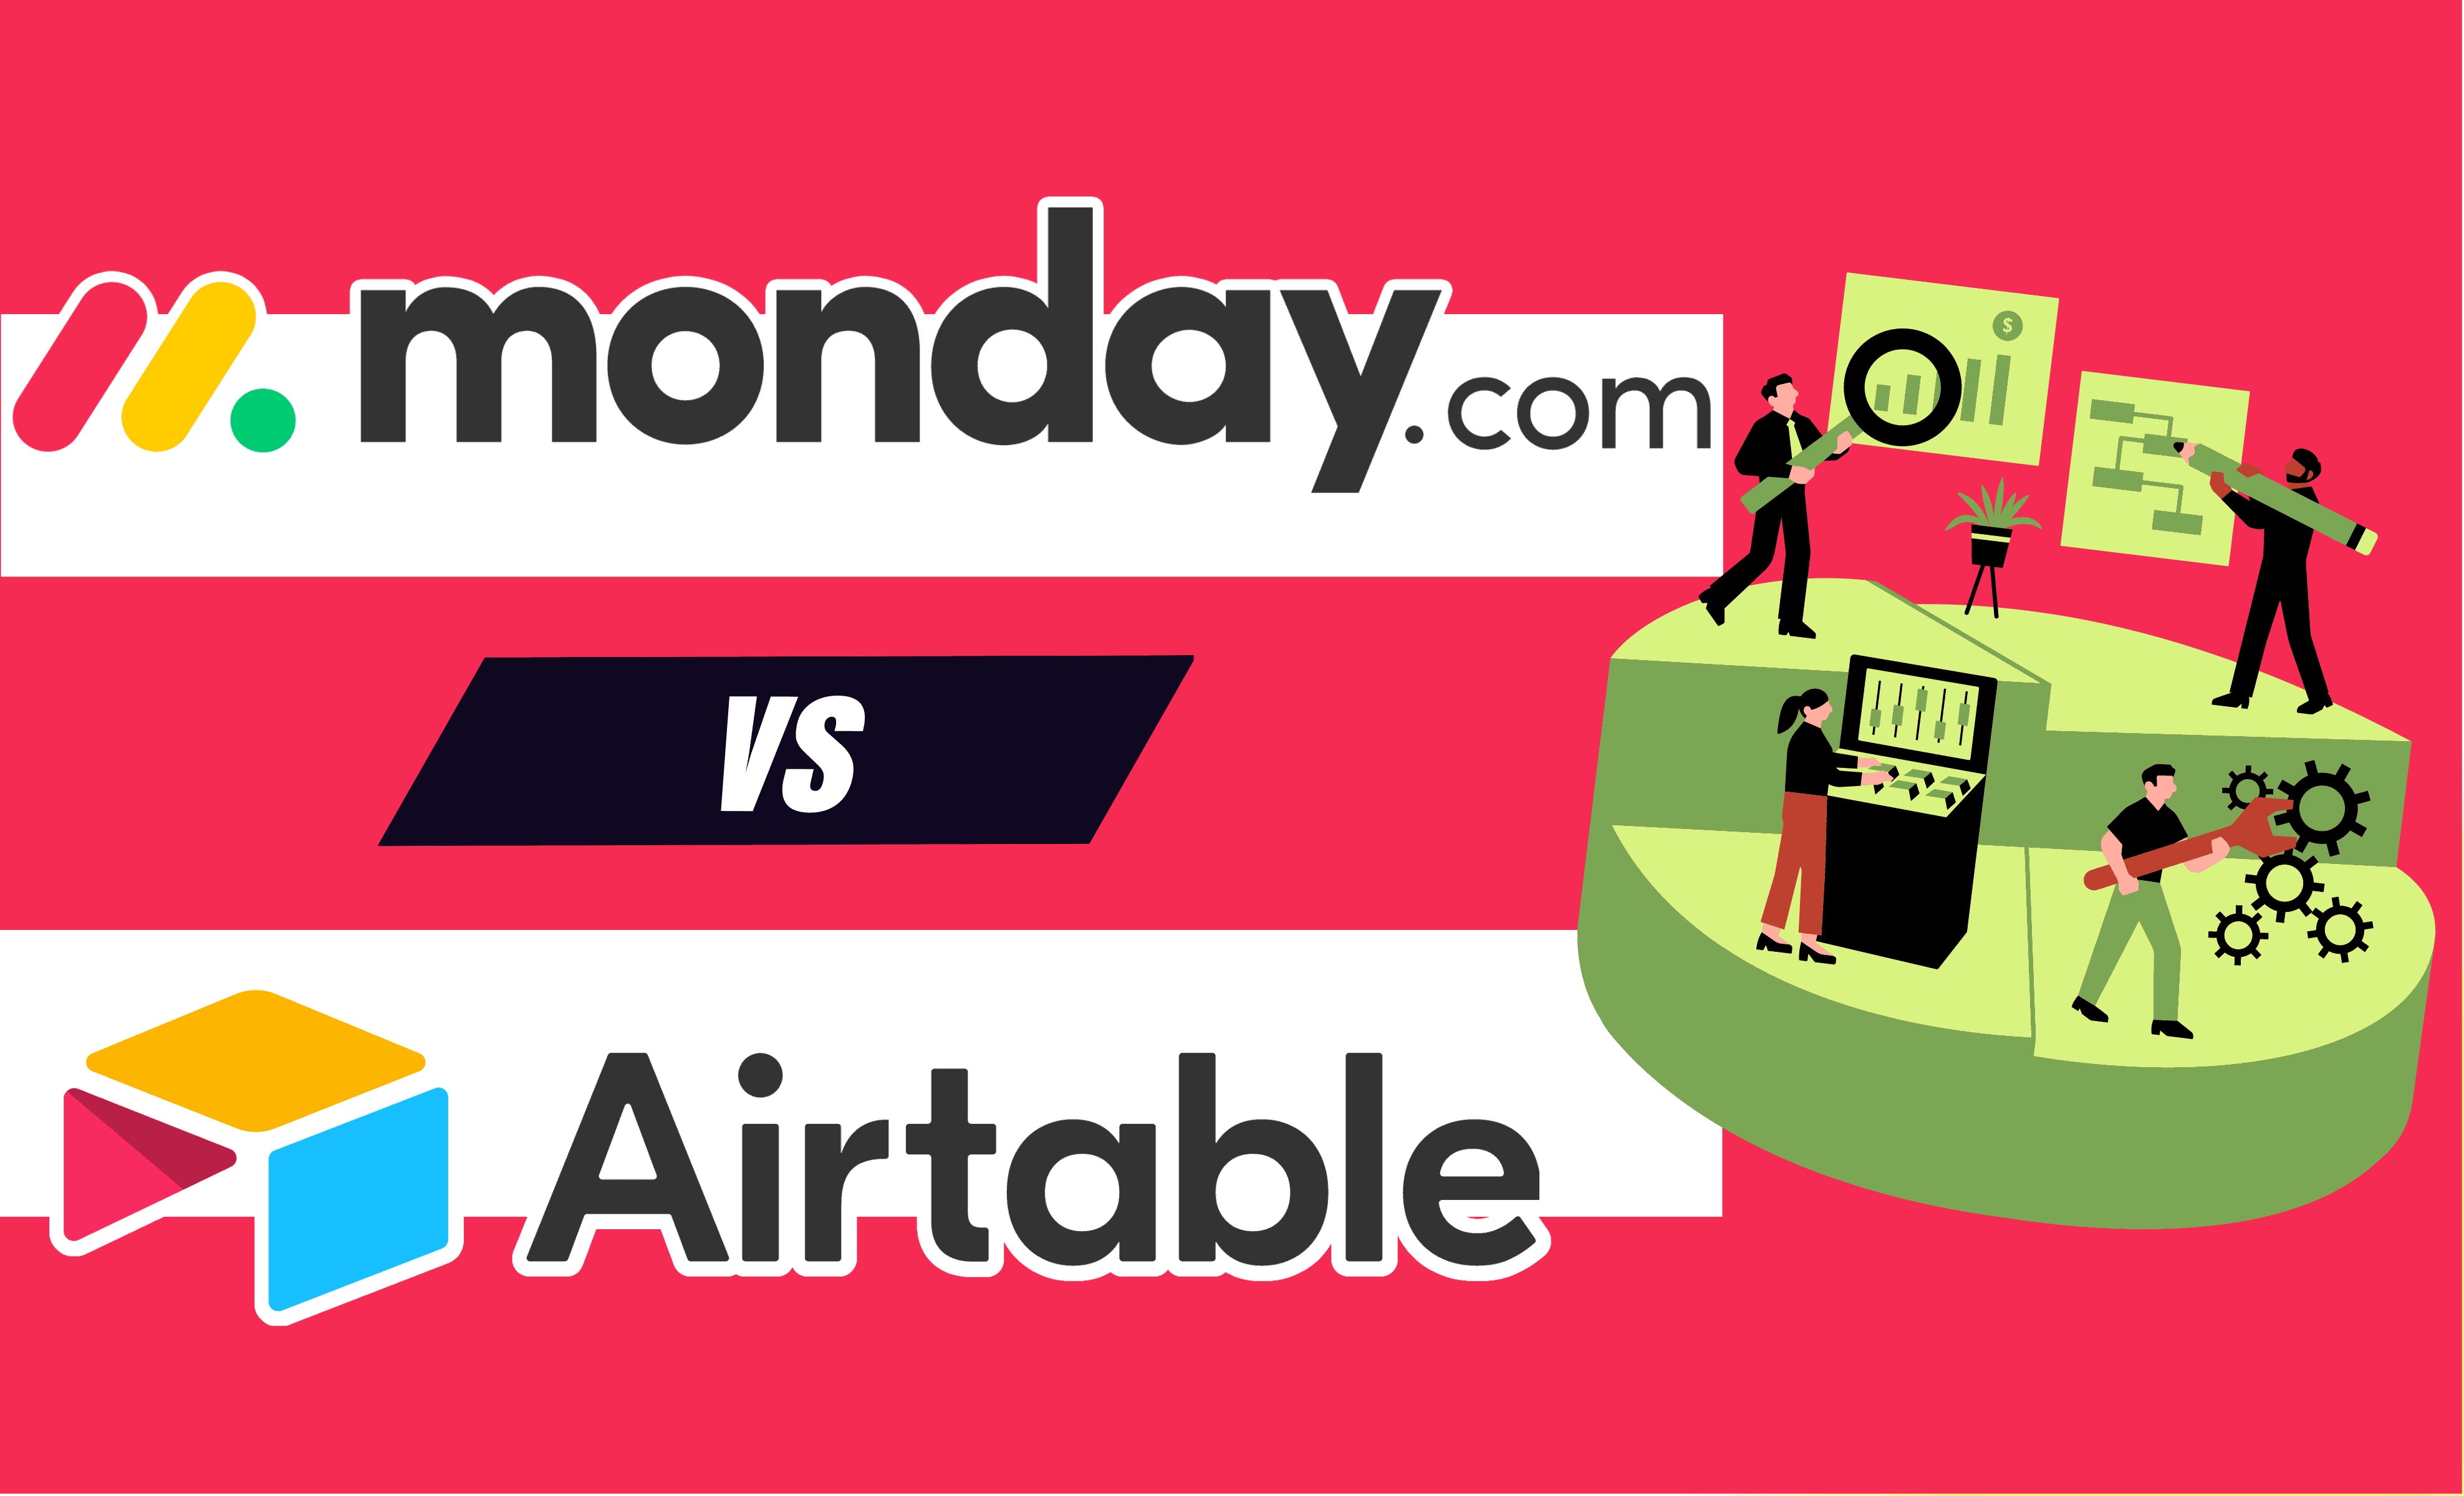 Monday.com vs Airtable